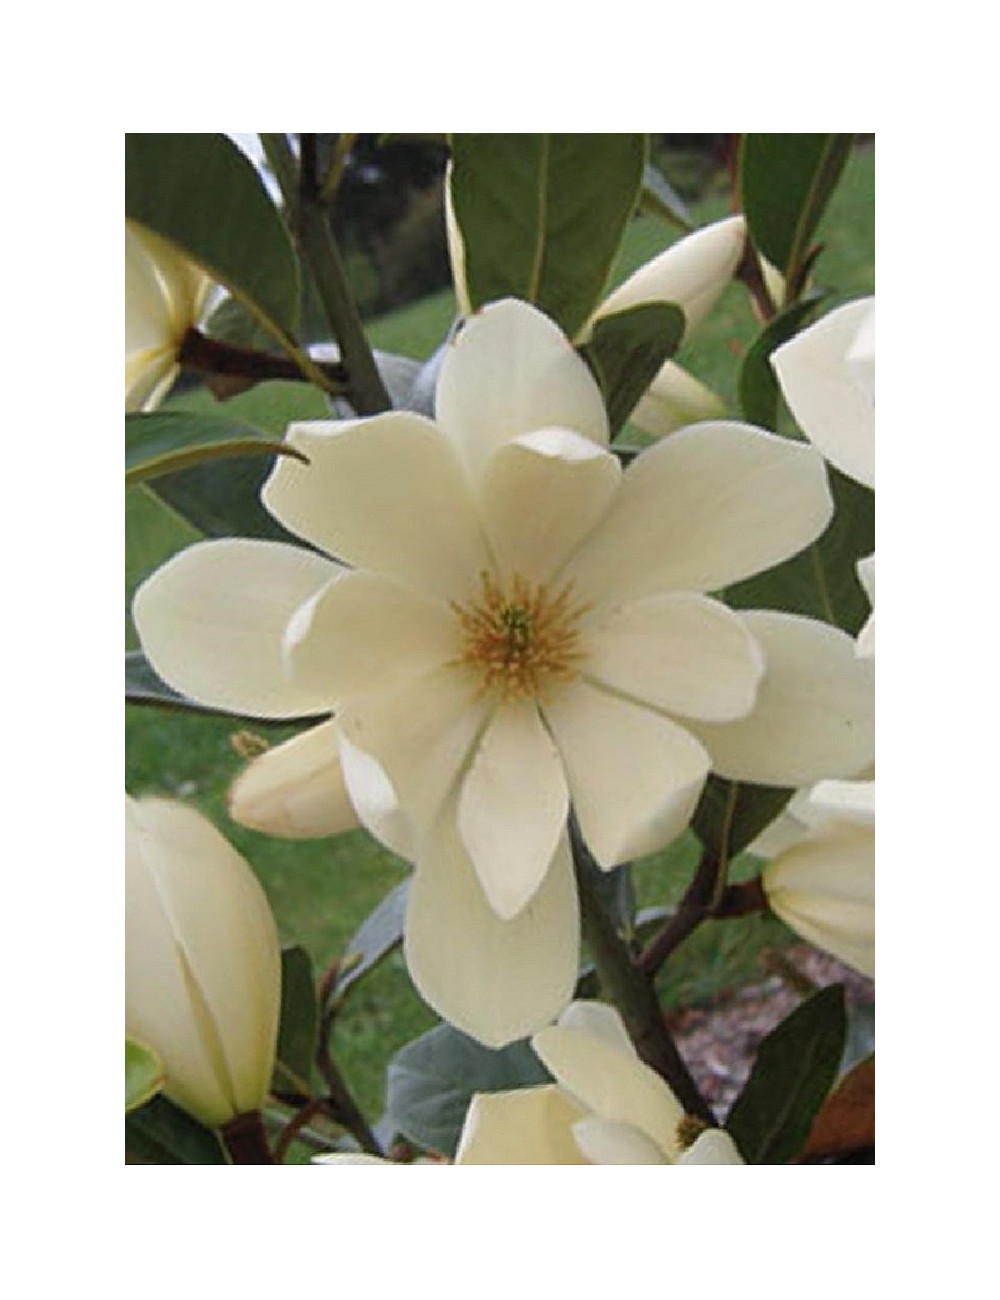 MICHELIA MAGNOLIA FAIRY CREAM ® (Michelia, magnolia)